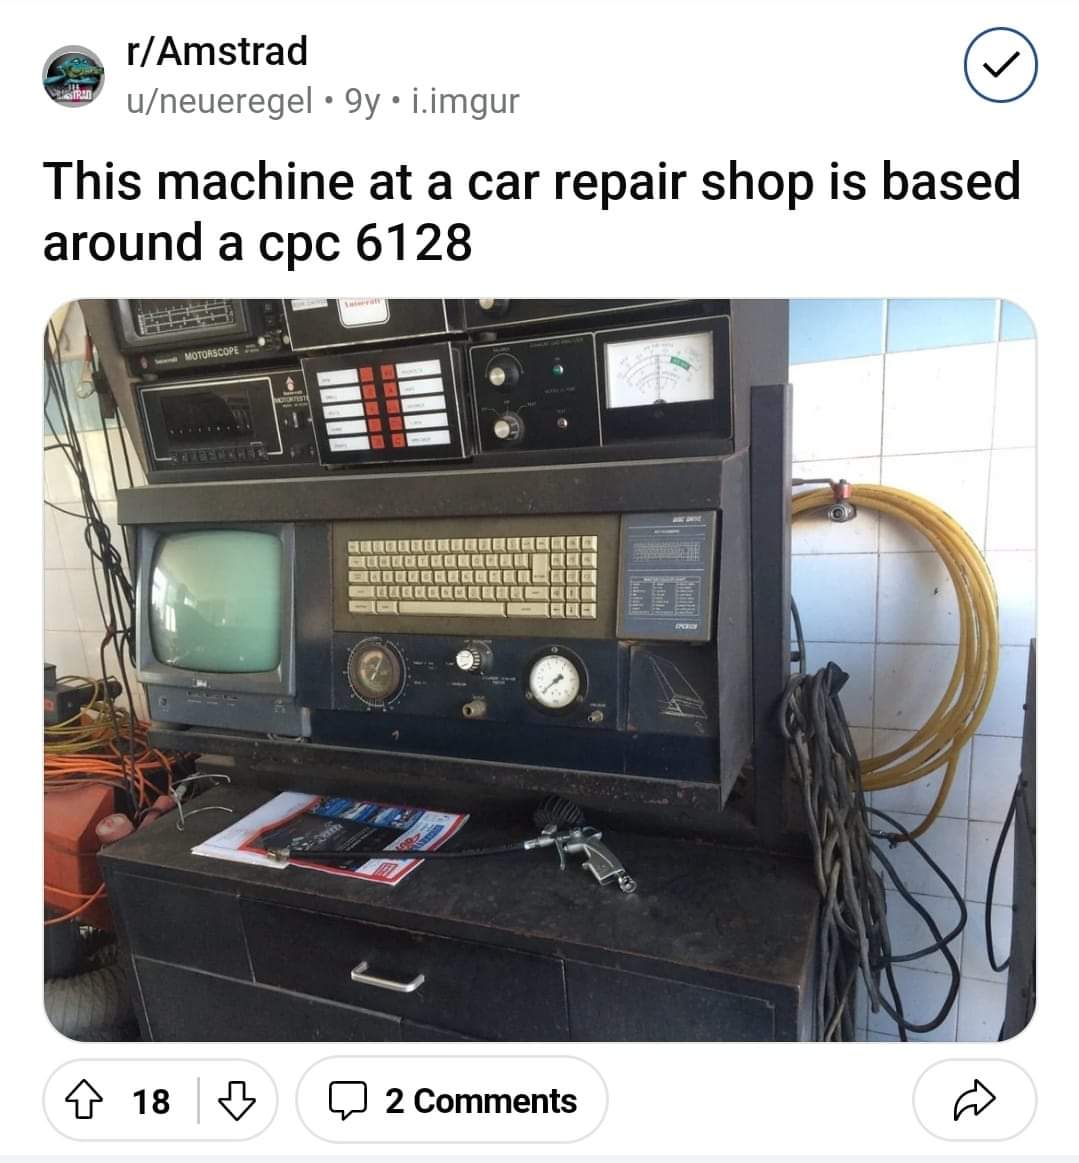 Πώς μας λέγανε οι μάστορες...; Κάτσε να βάλω το αμάξι στο κομπιούτερ να δω τον εγκεφαλό του! Ε, λοιπόν, ένας Amstrad 6128 χρησημοποιείται ακόμη σε ένα συνεργείο αυτοκινήτων στο εξωτερικό.